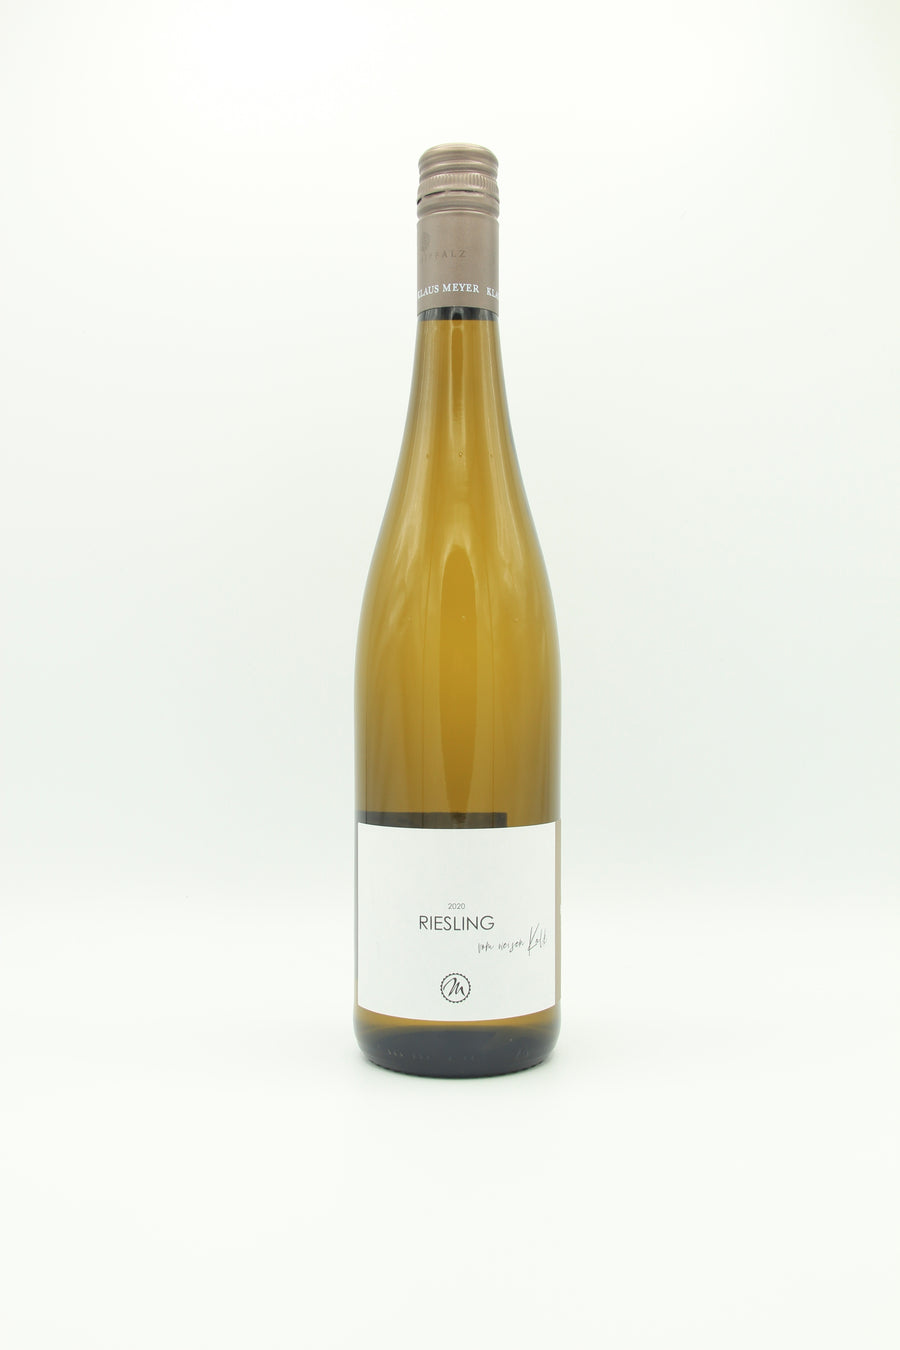 Riesling weißen Weinhandlung vom Nientiedt Peter Kalk trocken – Meyer